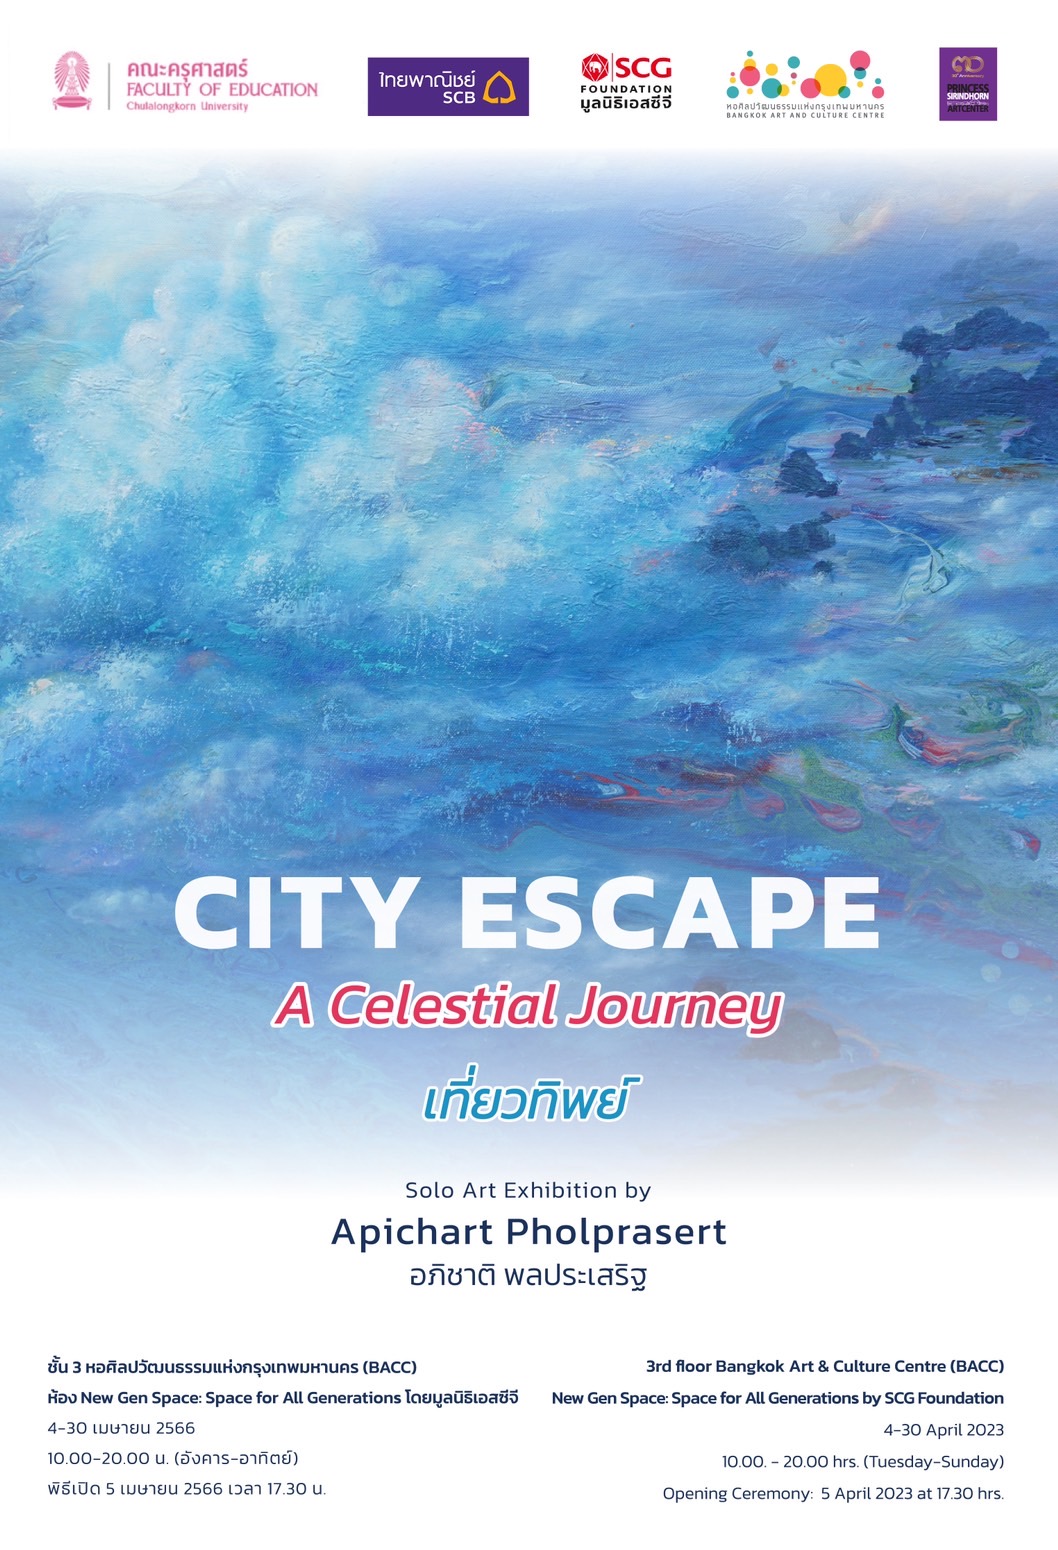 City Escape: A celestial journey